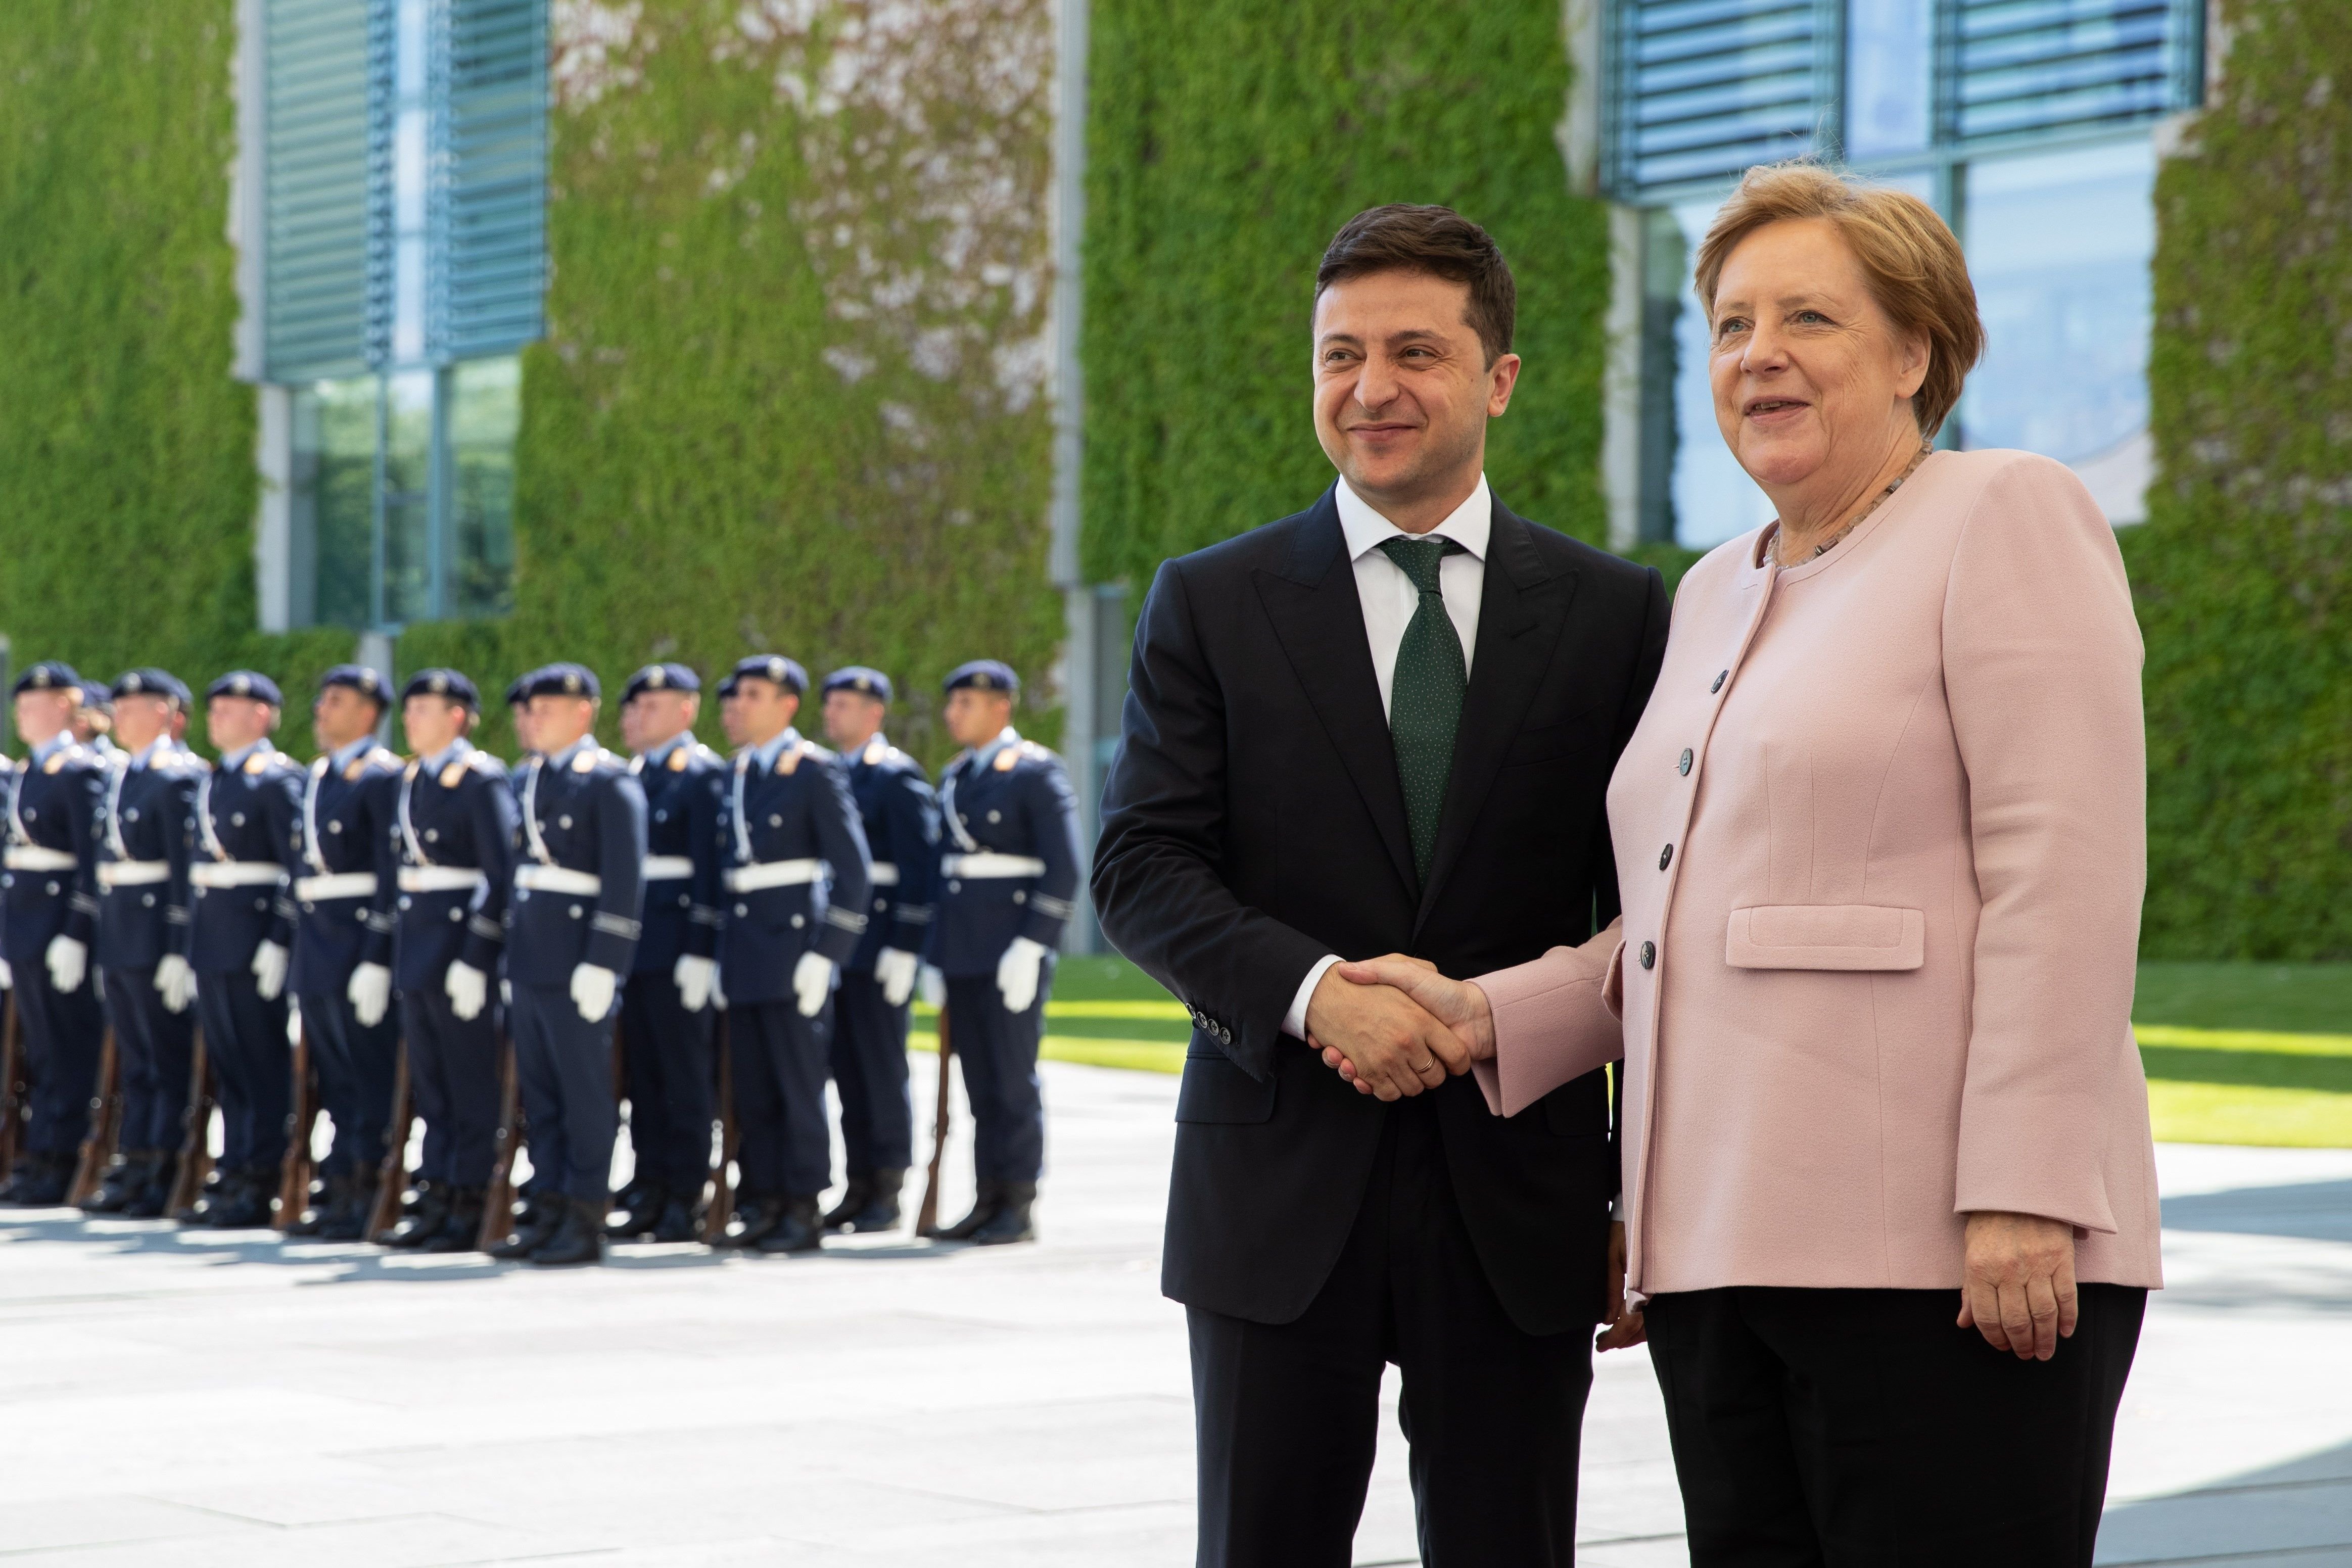 VÍDEO: Los extraños temblores de Merkel en la recepción al presidente ucraniano